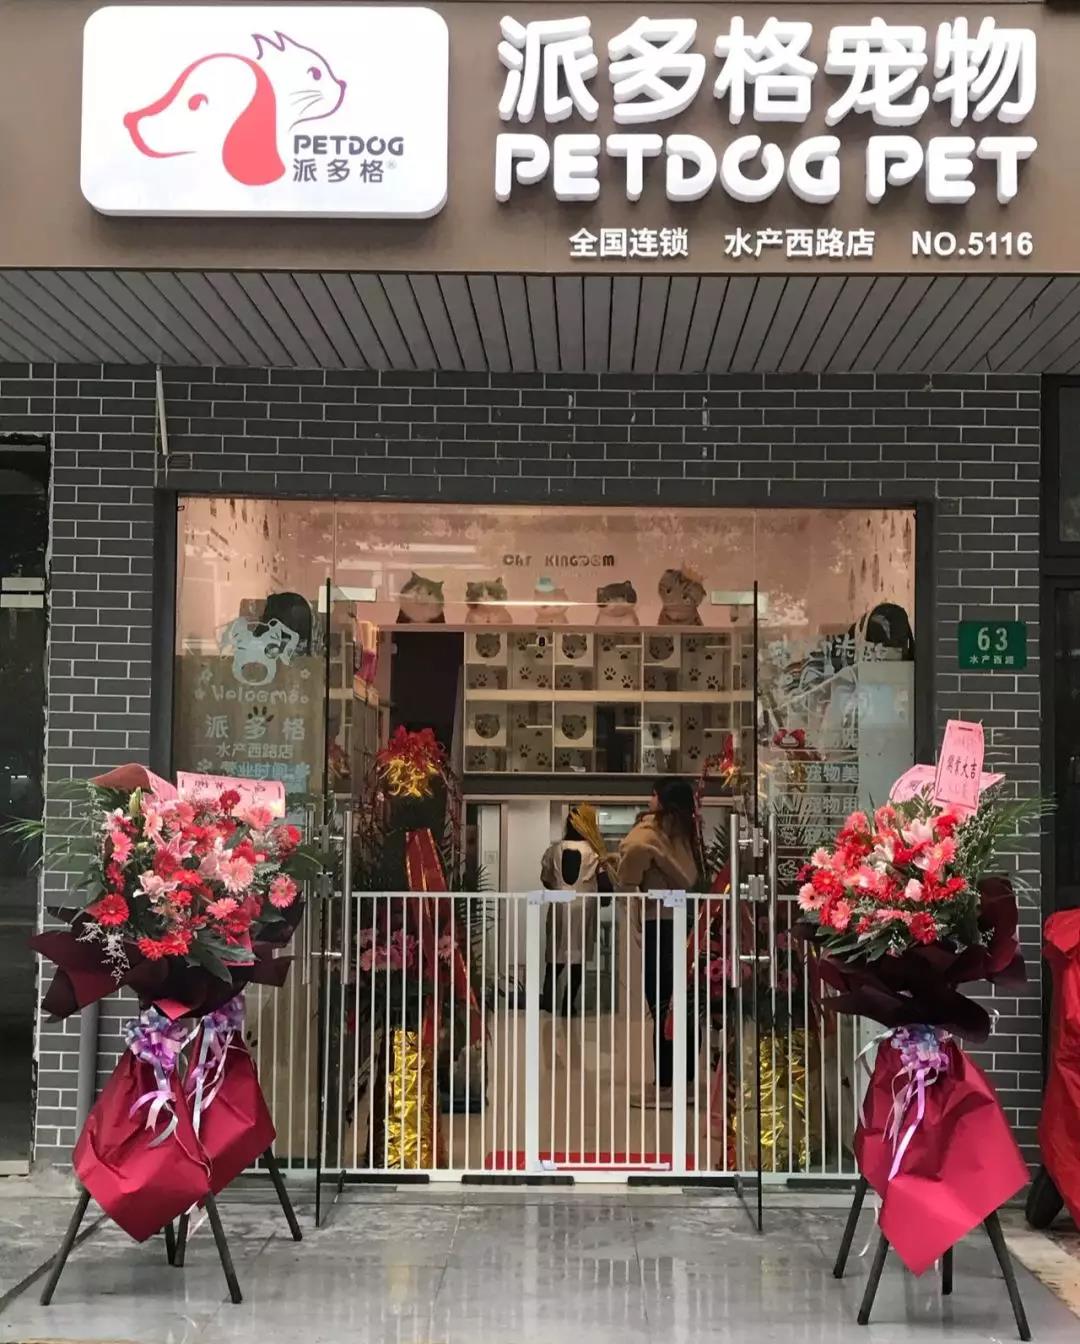 派多格上海水产西路店开业